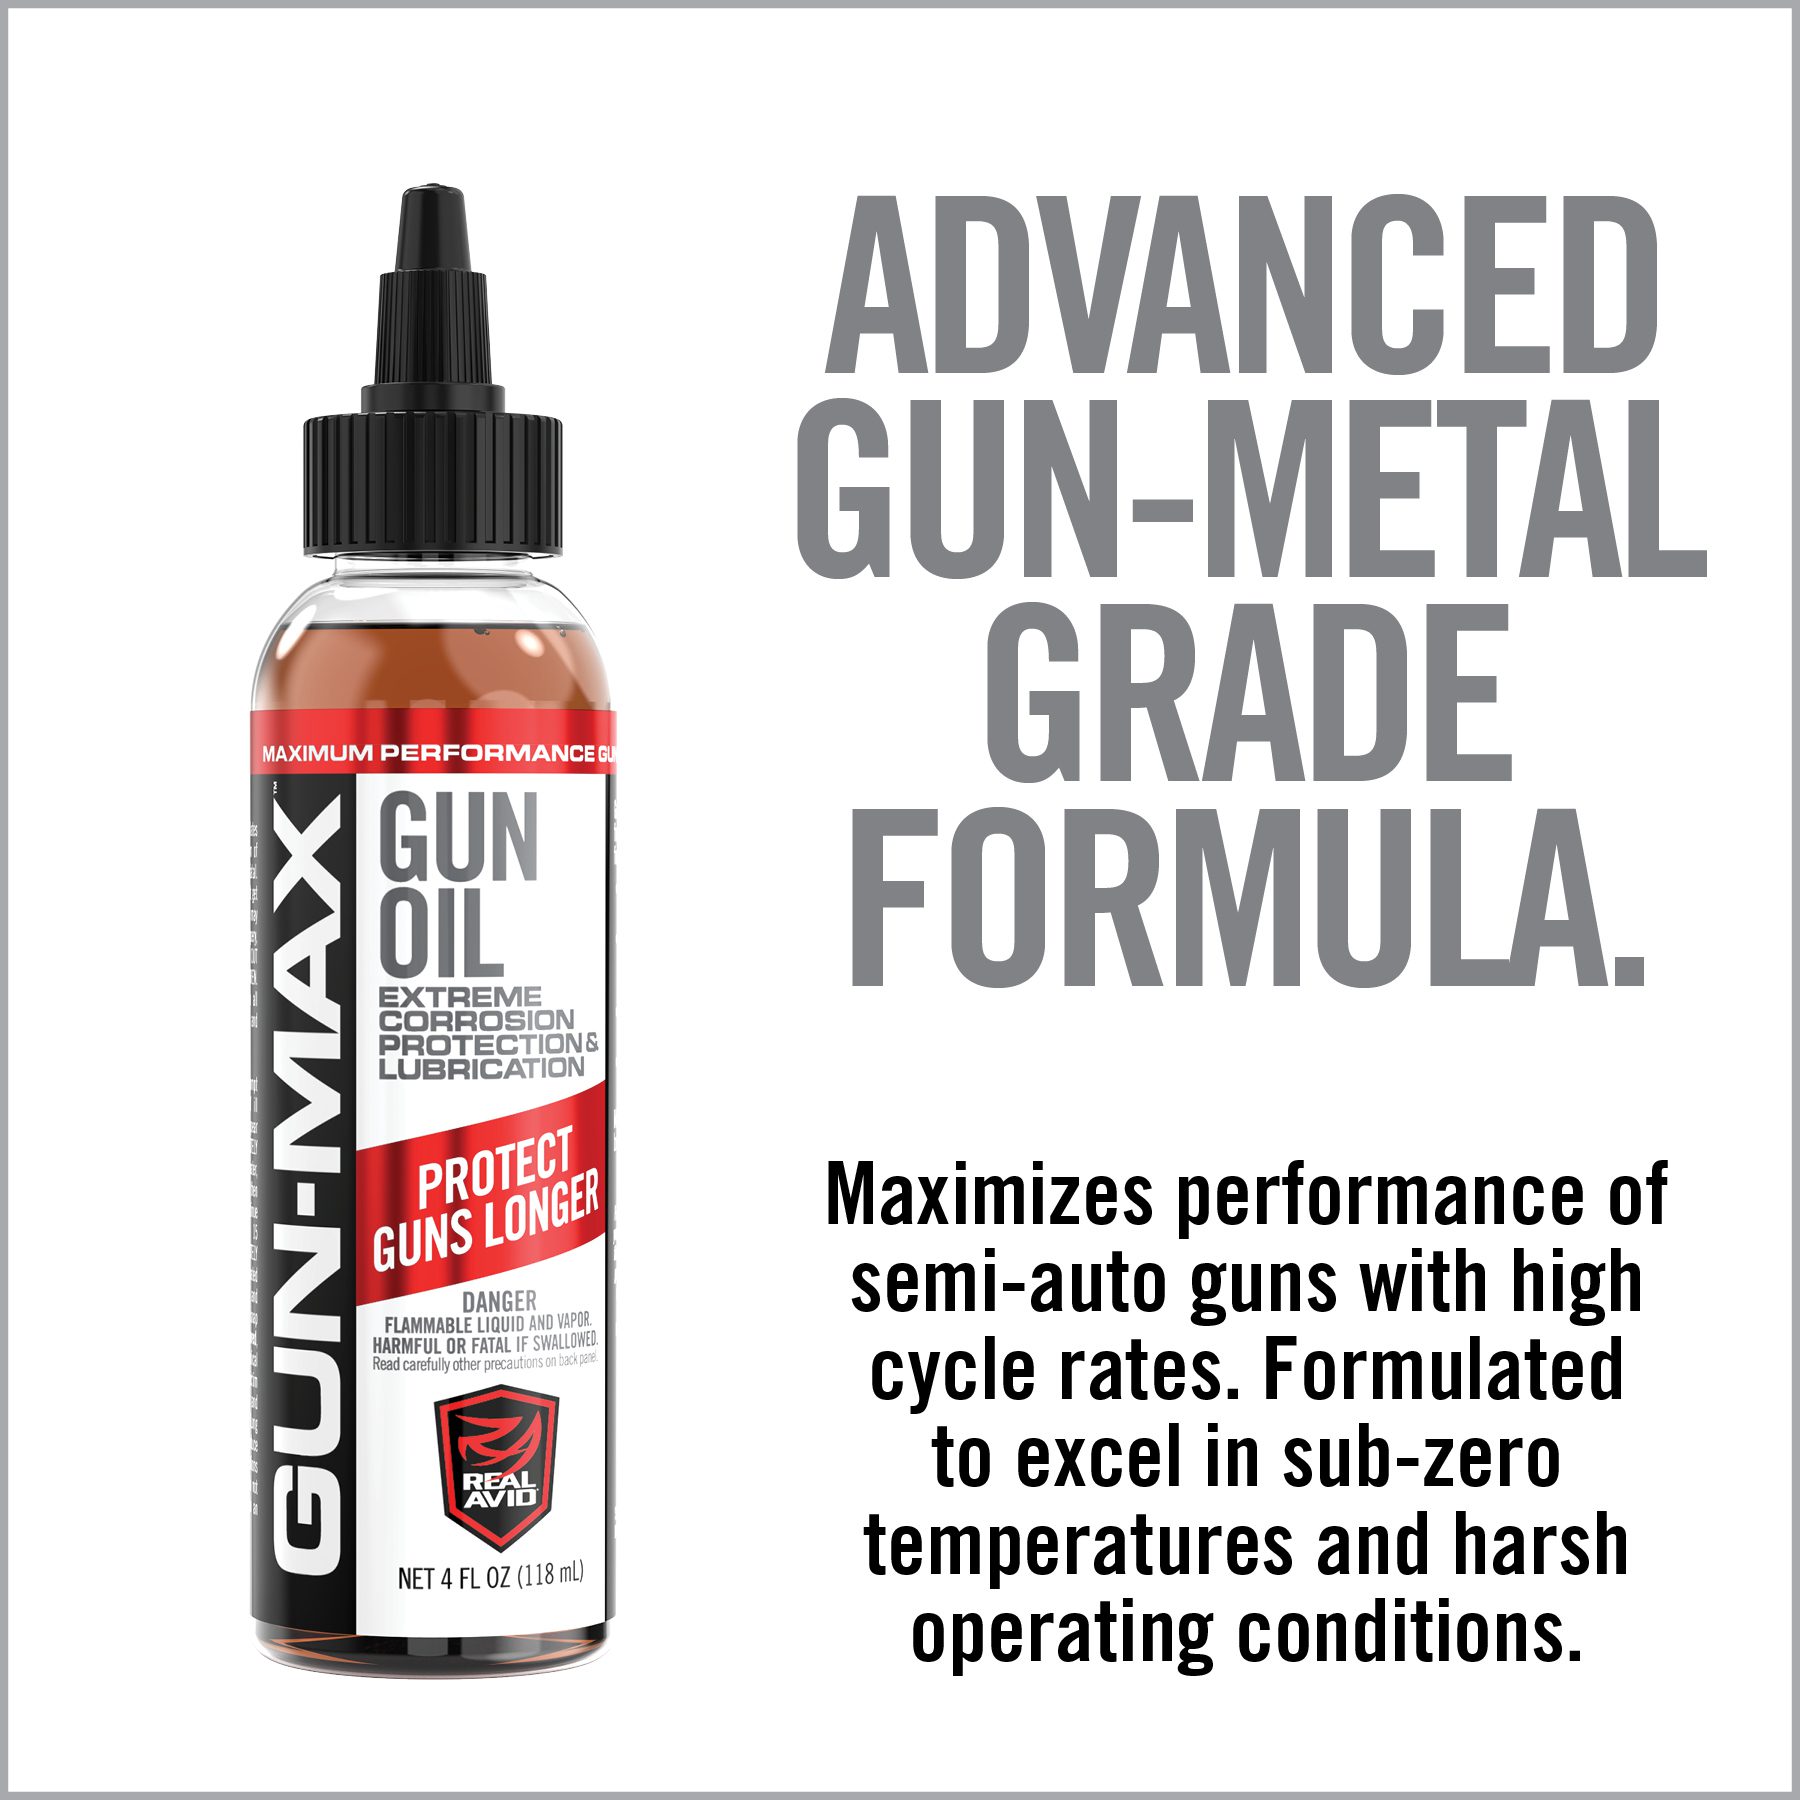 a bottle of gun - metal grade formula next to an advertisement